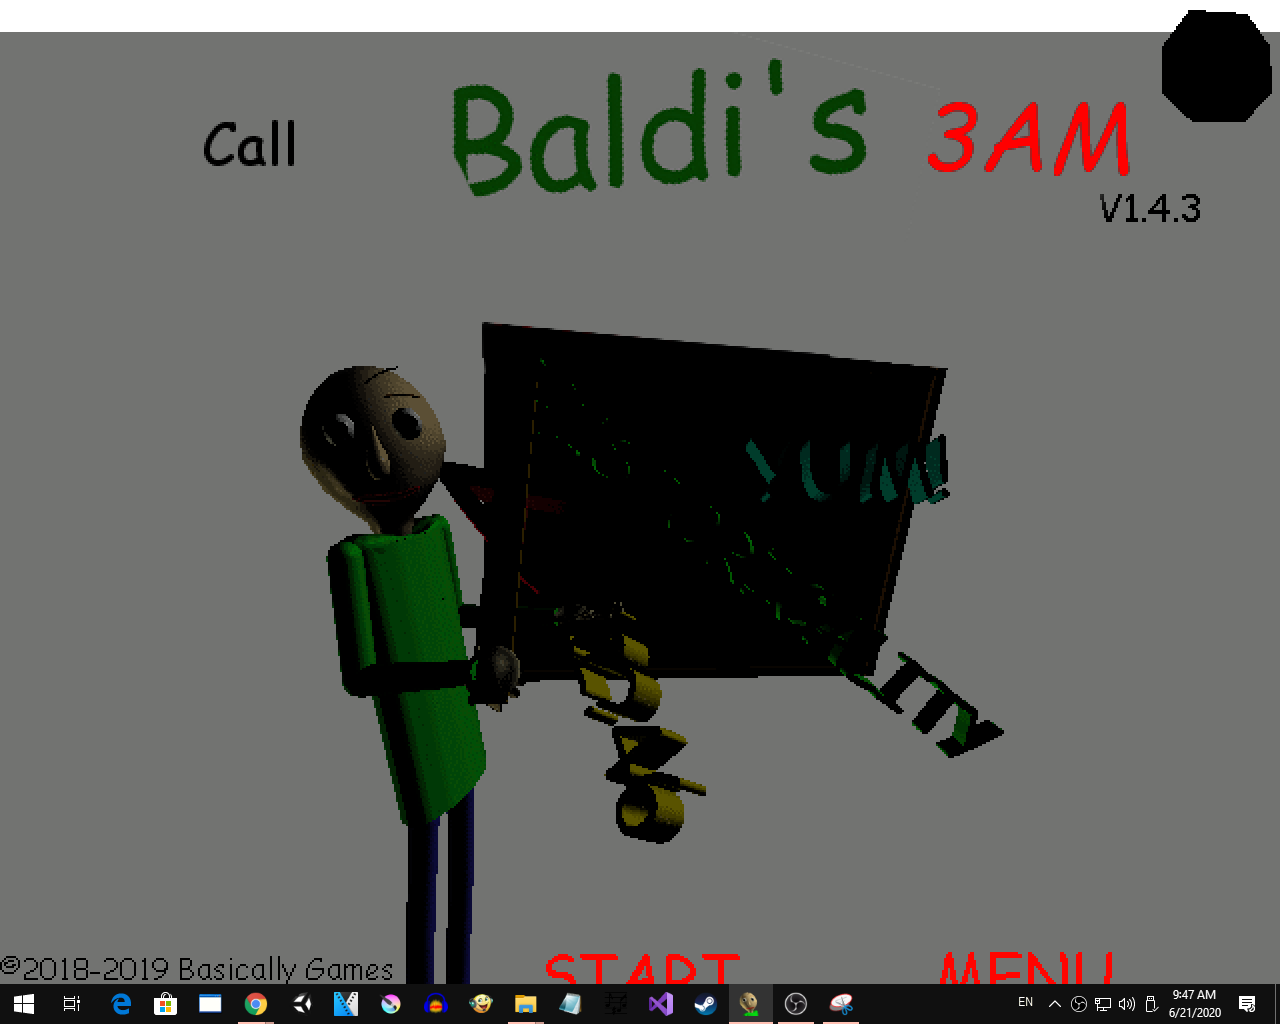 Baldi's basics secret ending